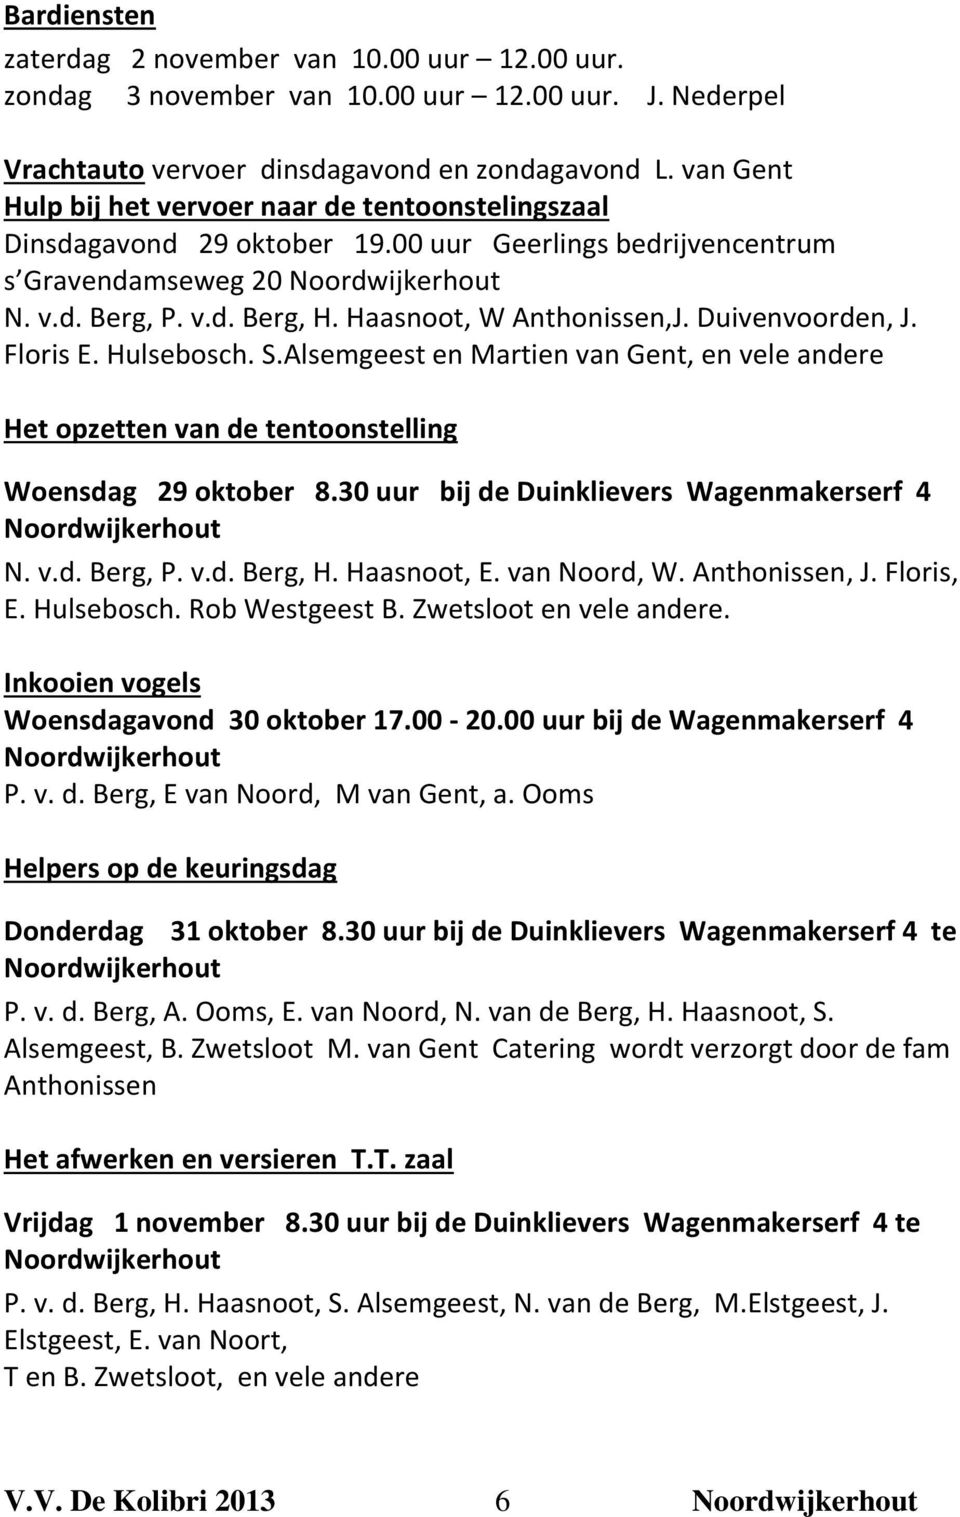 Haasnoot, W Anthonissen,J. Duivenvoorden, J. Floris E. Hulsebosch. S.Alsemgeest en Martien van Gent, en vele andere Het opzetten van de tentoonstelling Woensdag 29 oktober 8.